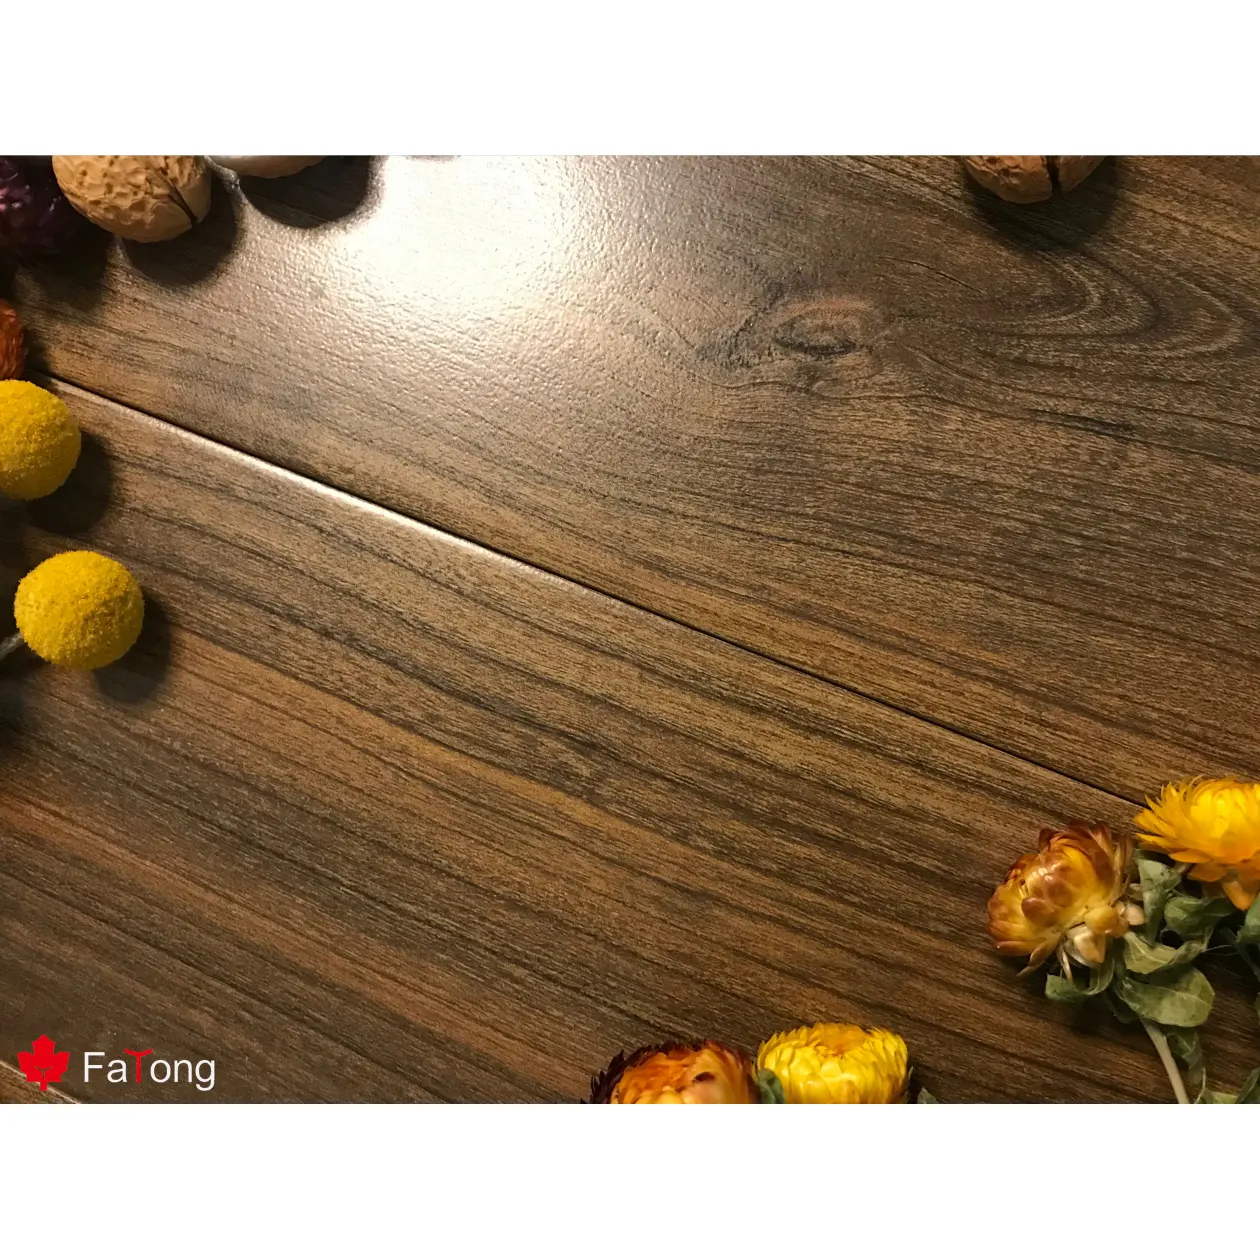 Foshan Fatong-Baldosas de madera de 15x80cm, diseño de suelo de cerámica, azulejo decorativo para sala de estar y pared, buen precio